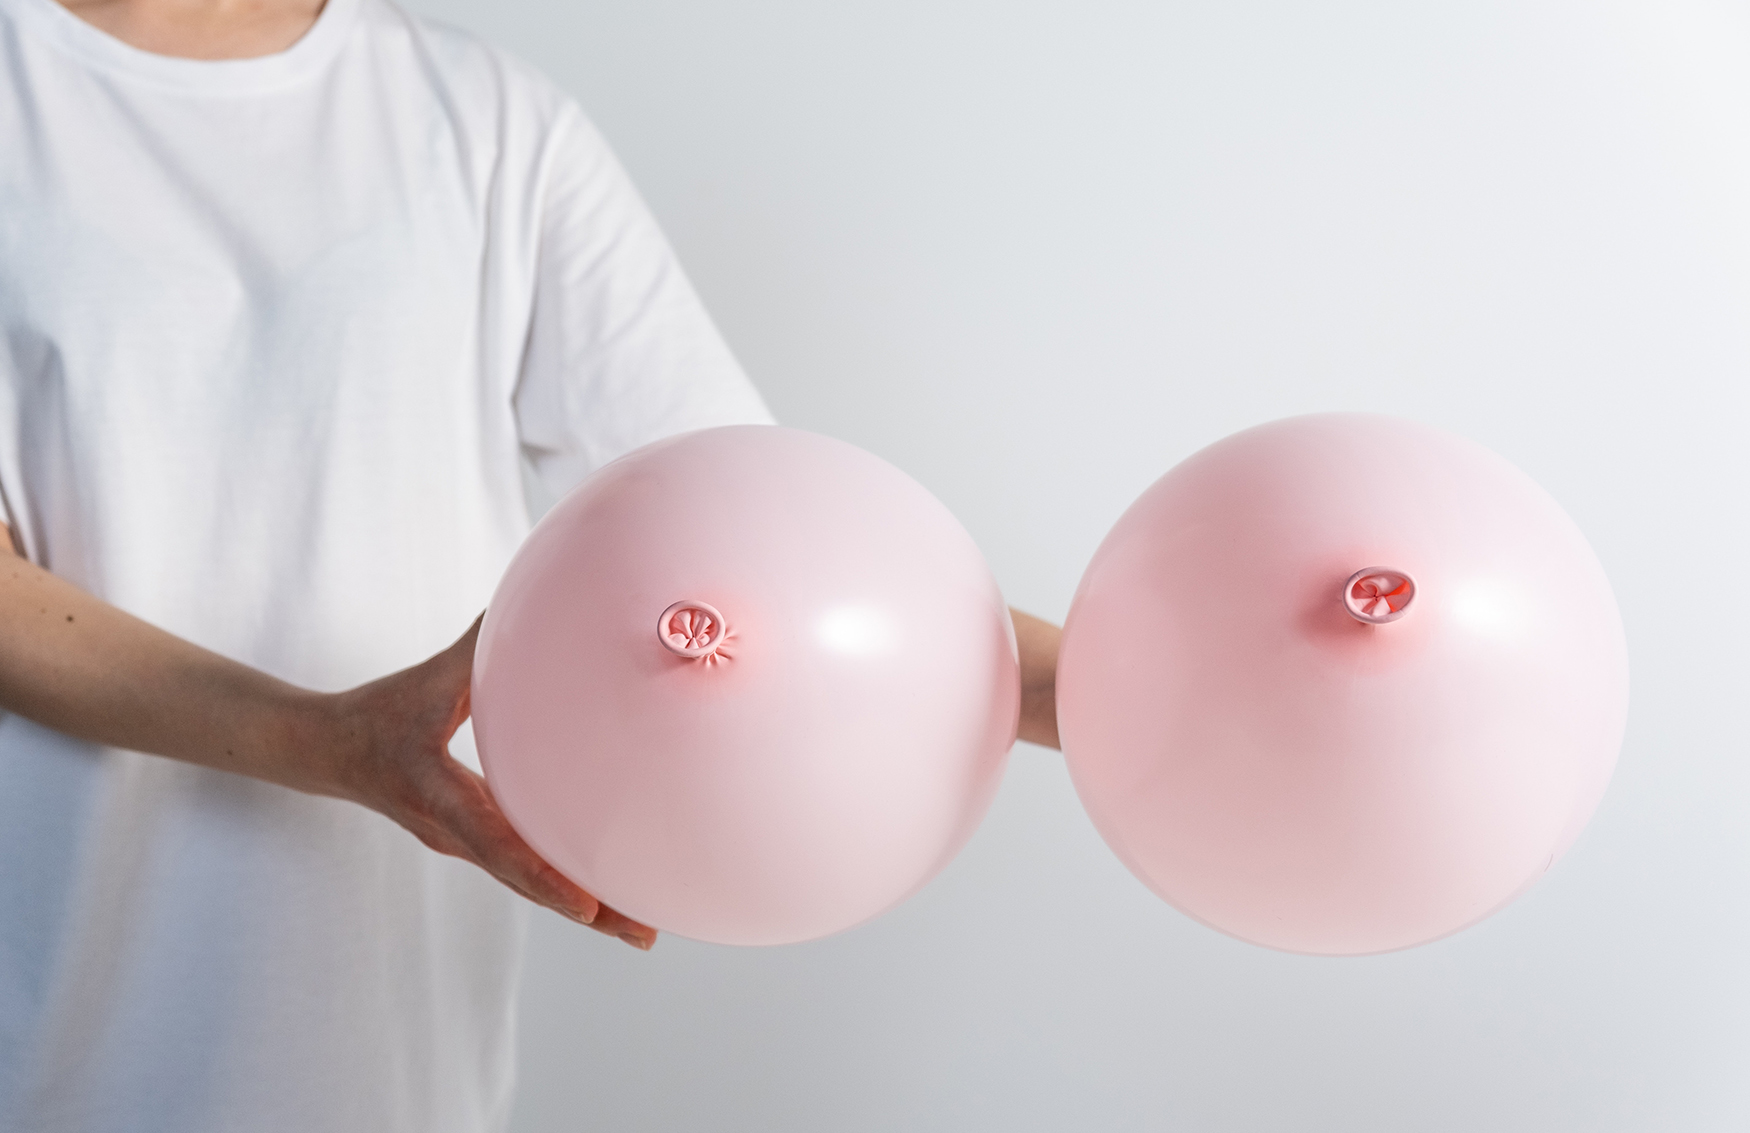 Mitos y verdades sobre el cáncer de mama